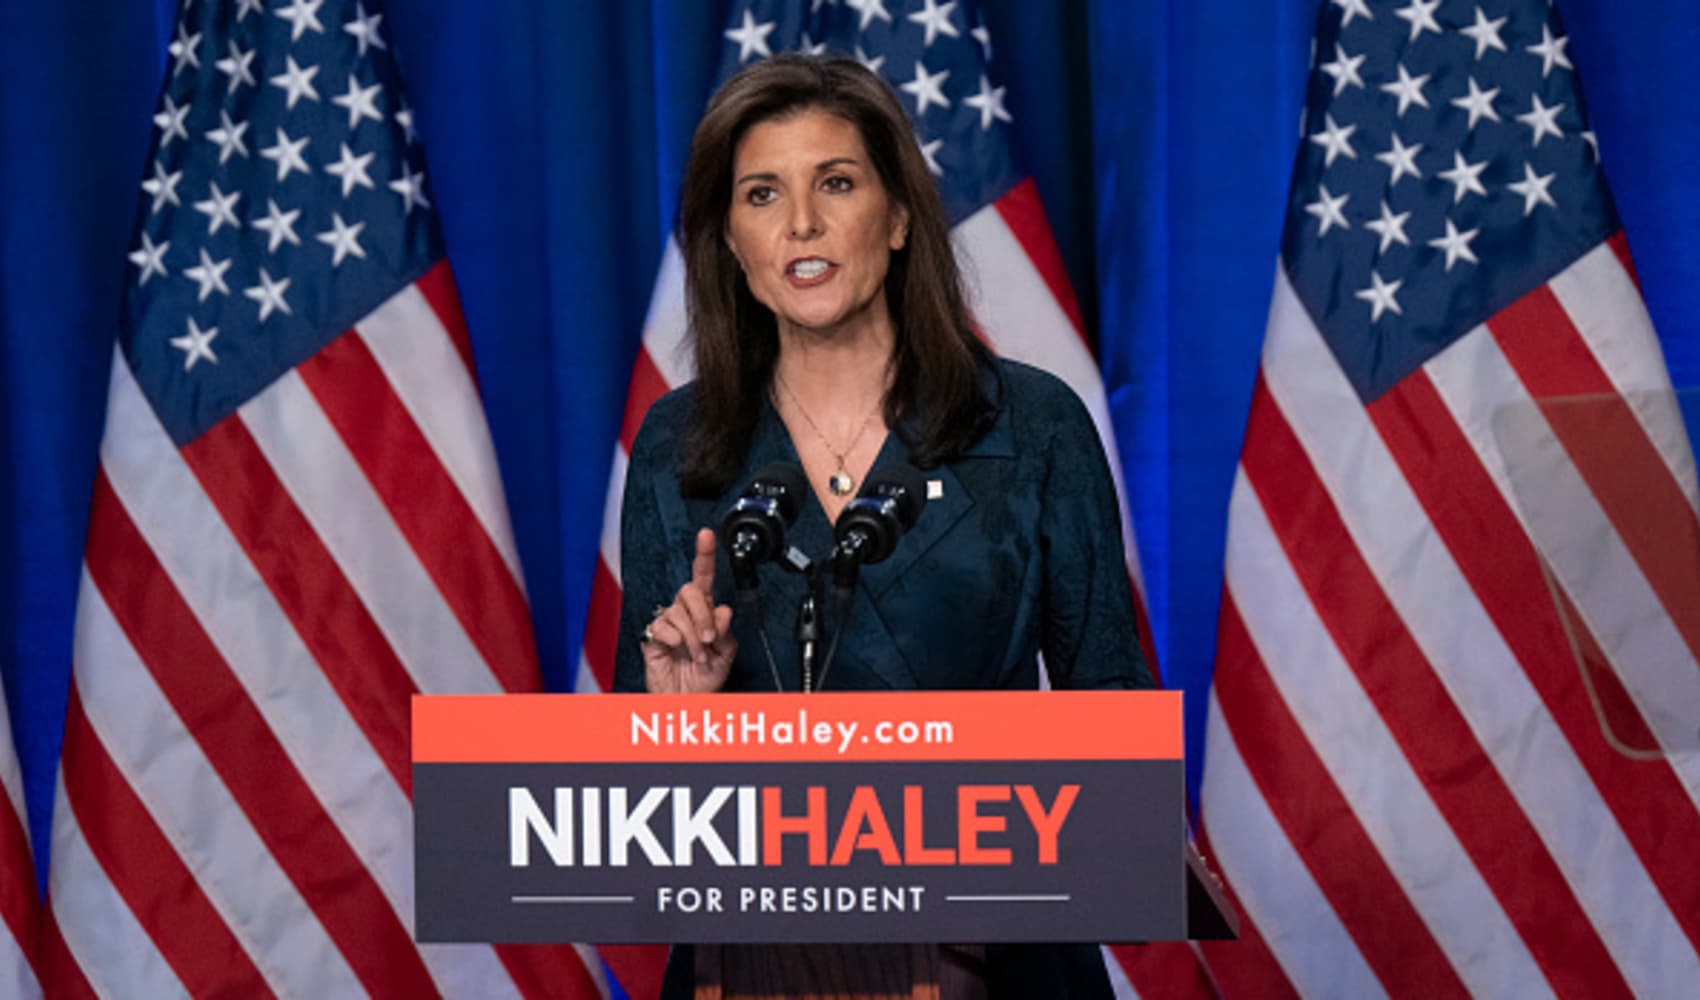 Money will continue to ‘pour in' for Nikki Haley despite losses, says New Hampshire Gov. Chris Sununu